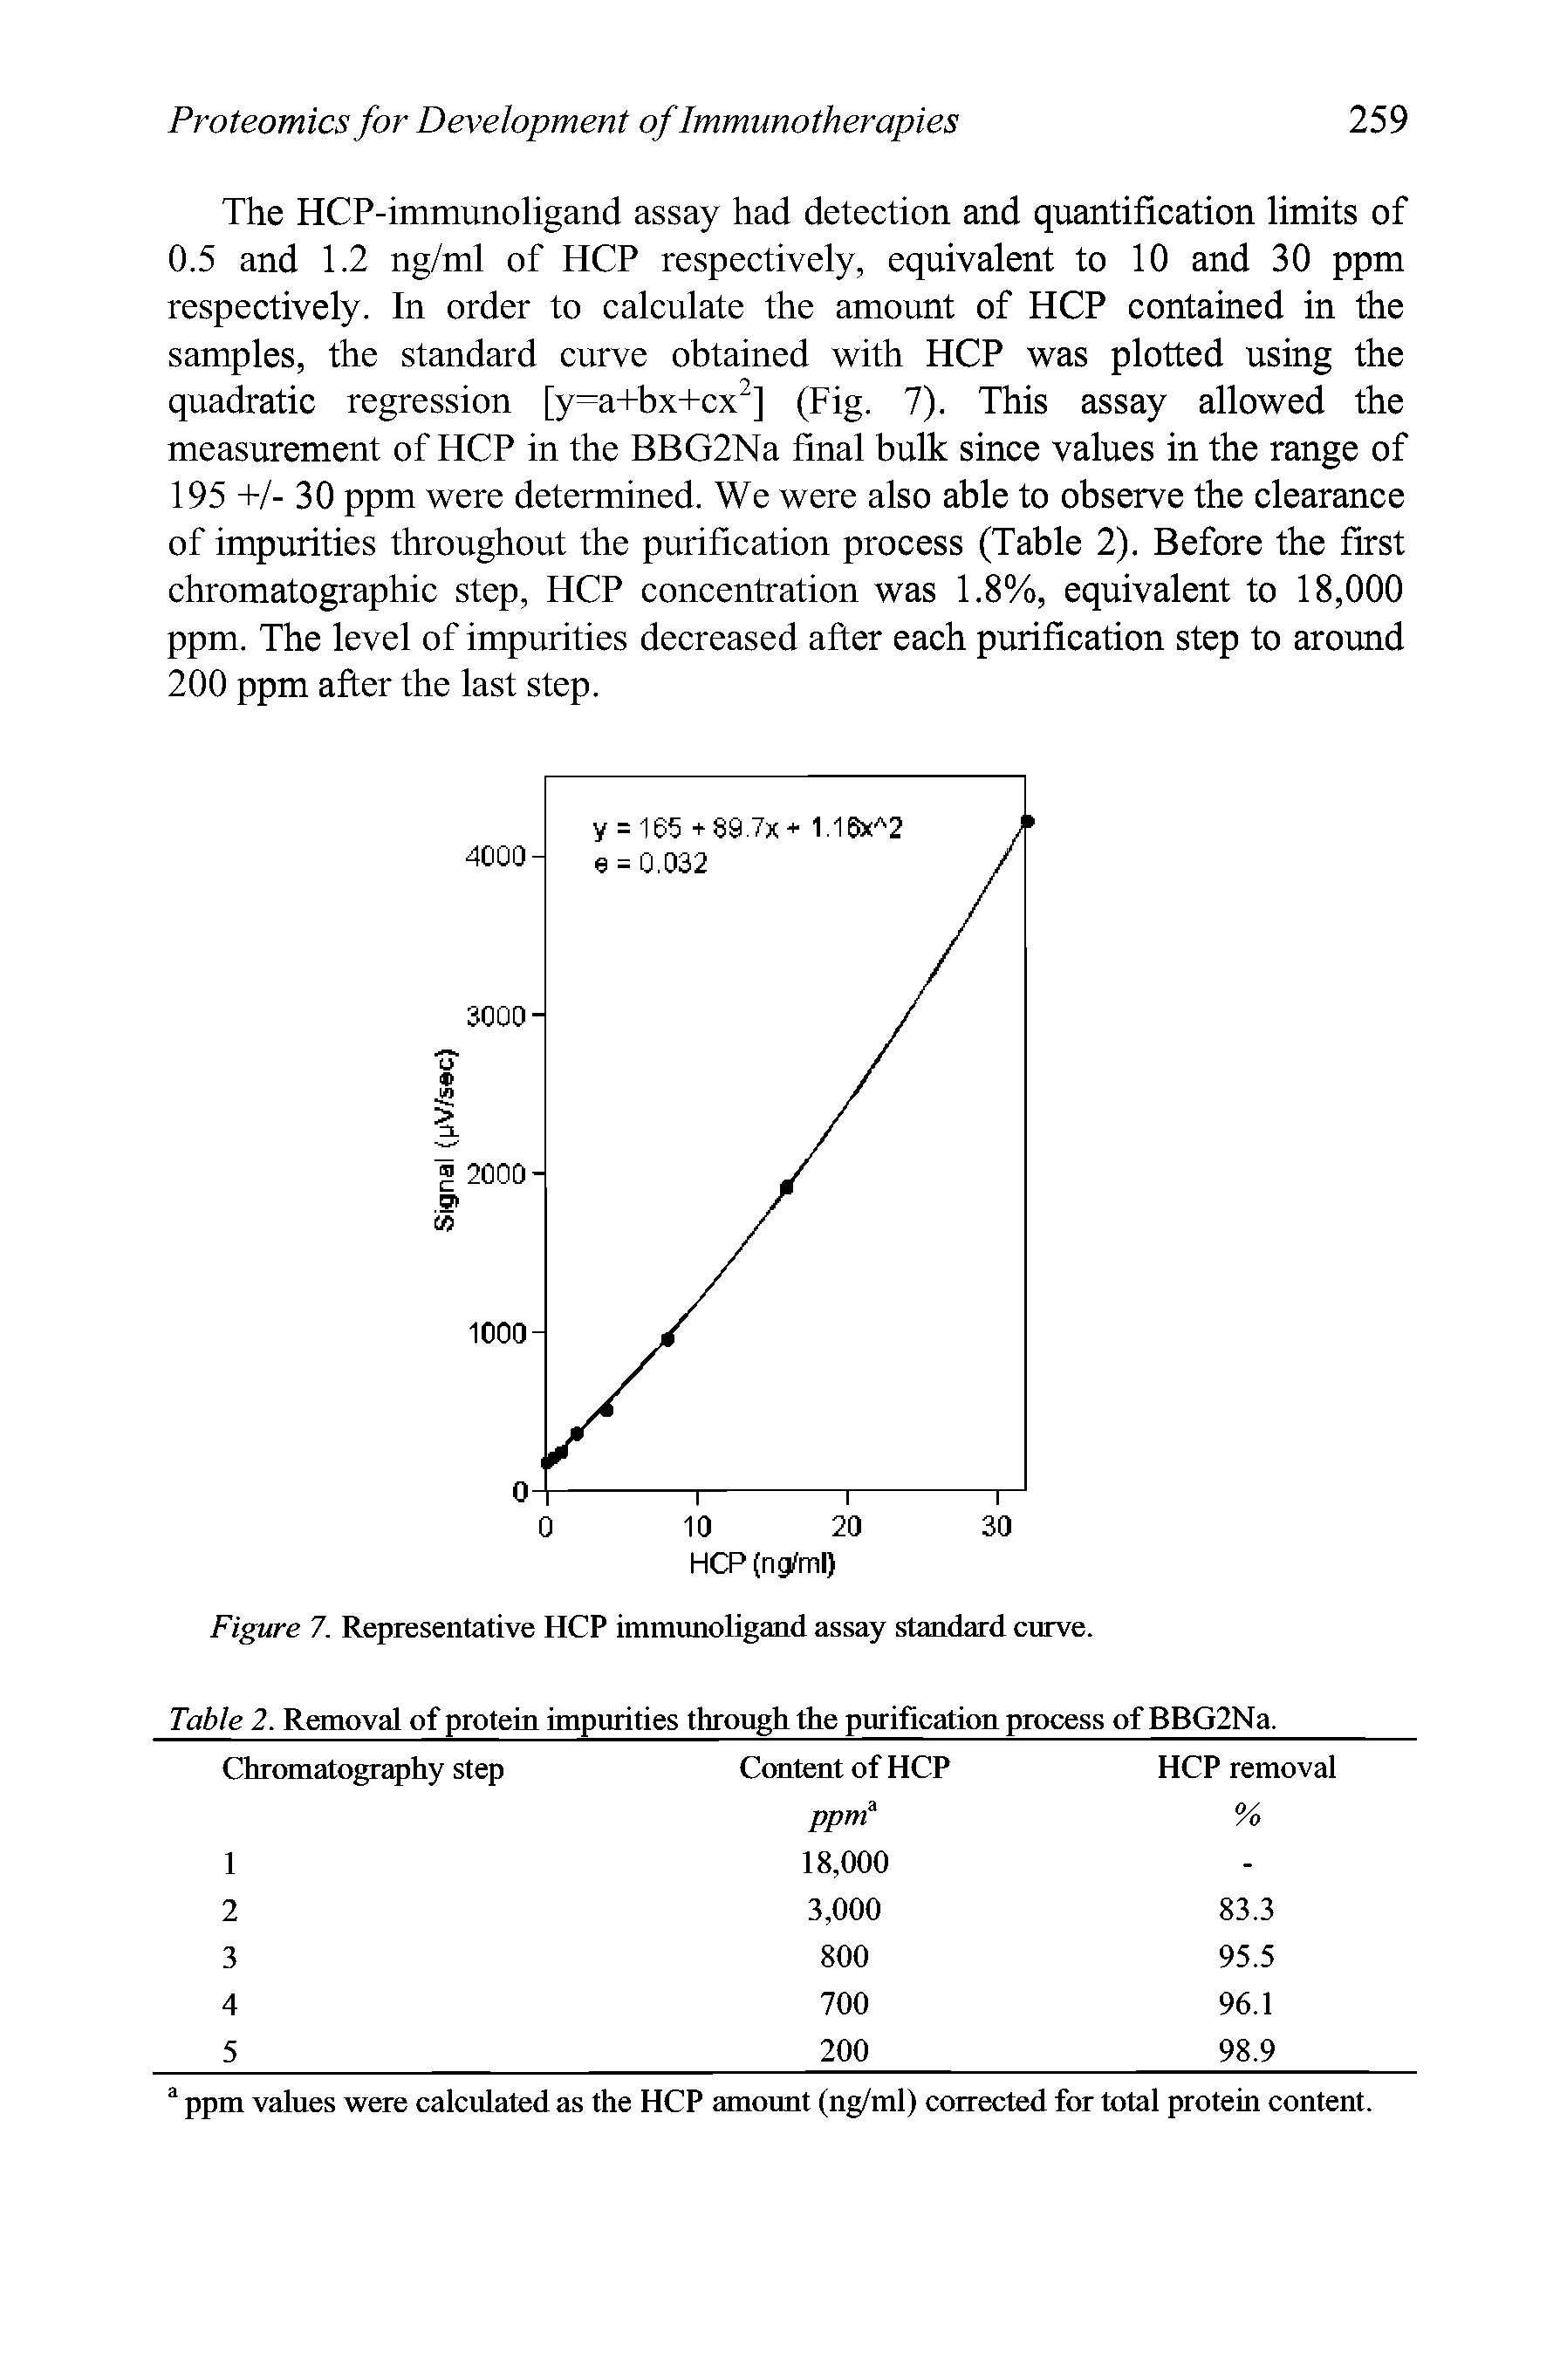 Figure 7. Representative HCP immunoligand assay standard curve.